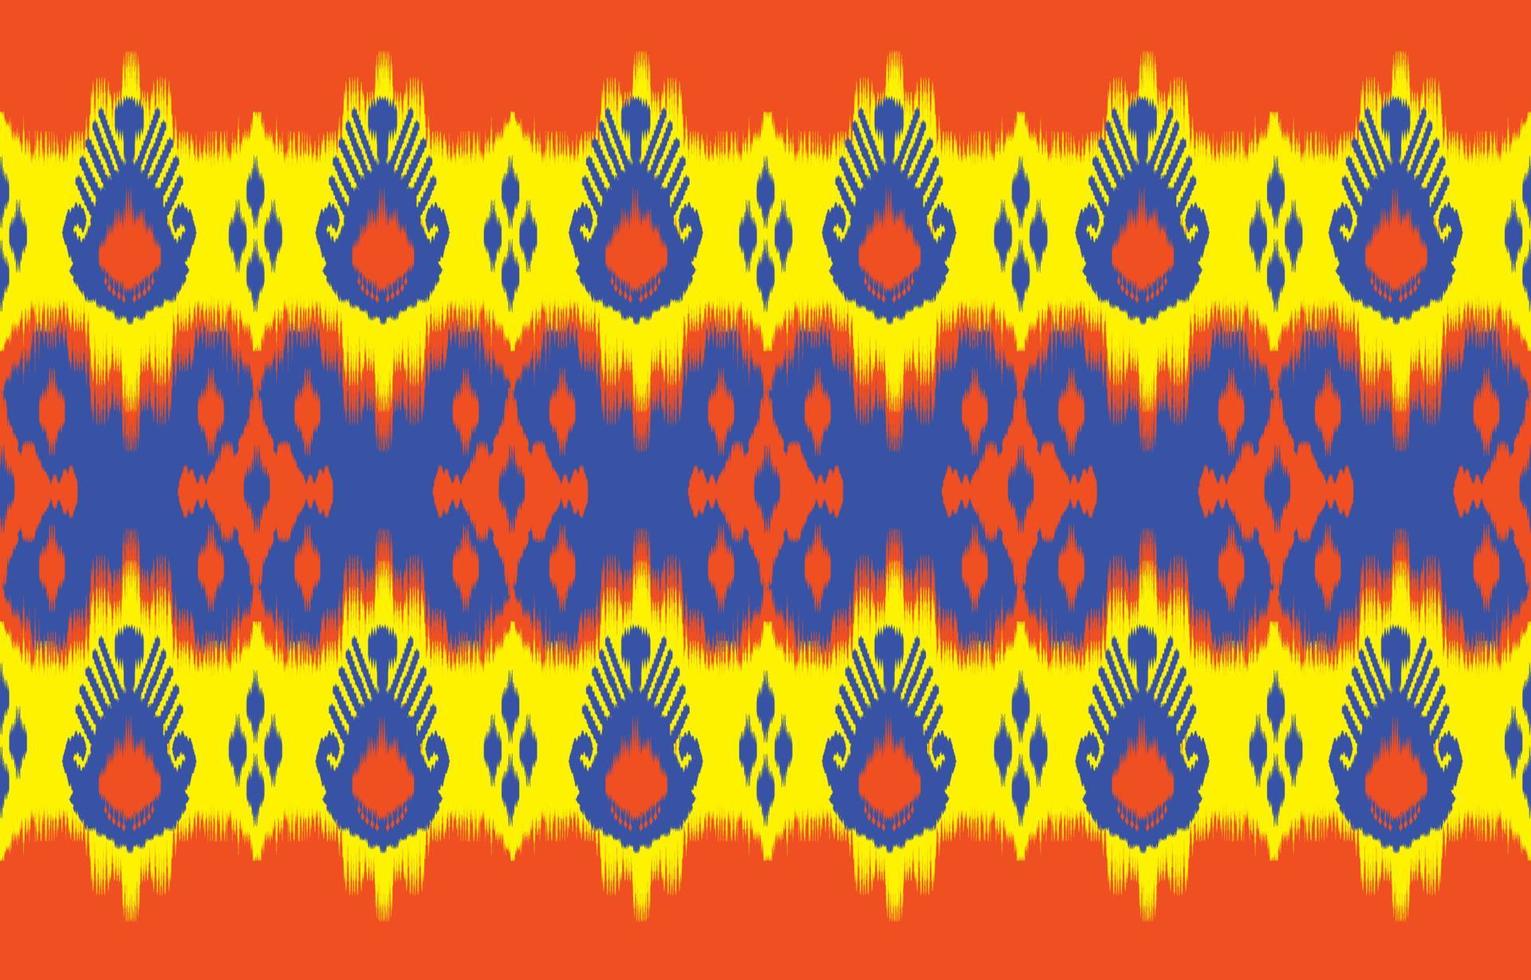 Patrón de ikat uzbeko, hermoso arte étnico. patrón impecable en bordados tribales y folclóricos al estilo de asia central. impresión de adorno de arte. diseño para moqueta, papel pintado, ropa, envoltura, tela, cubierta. vector